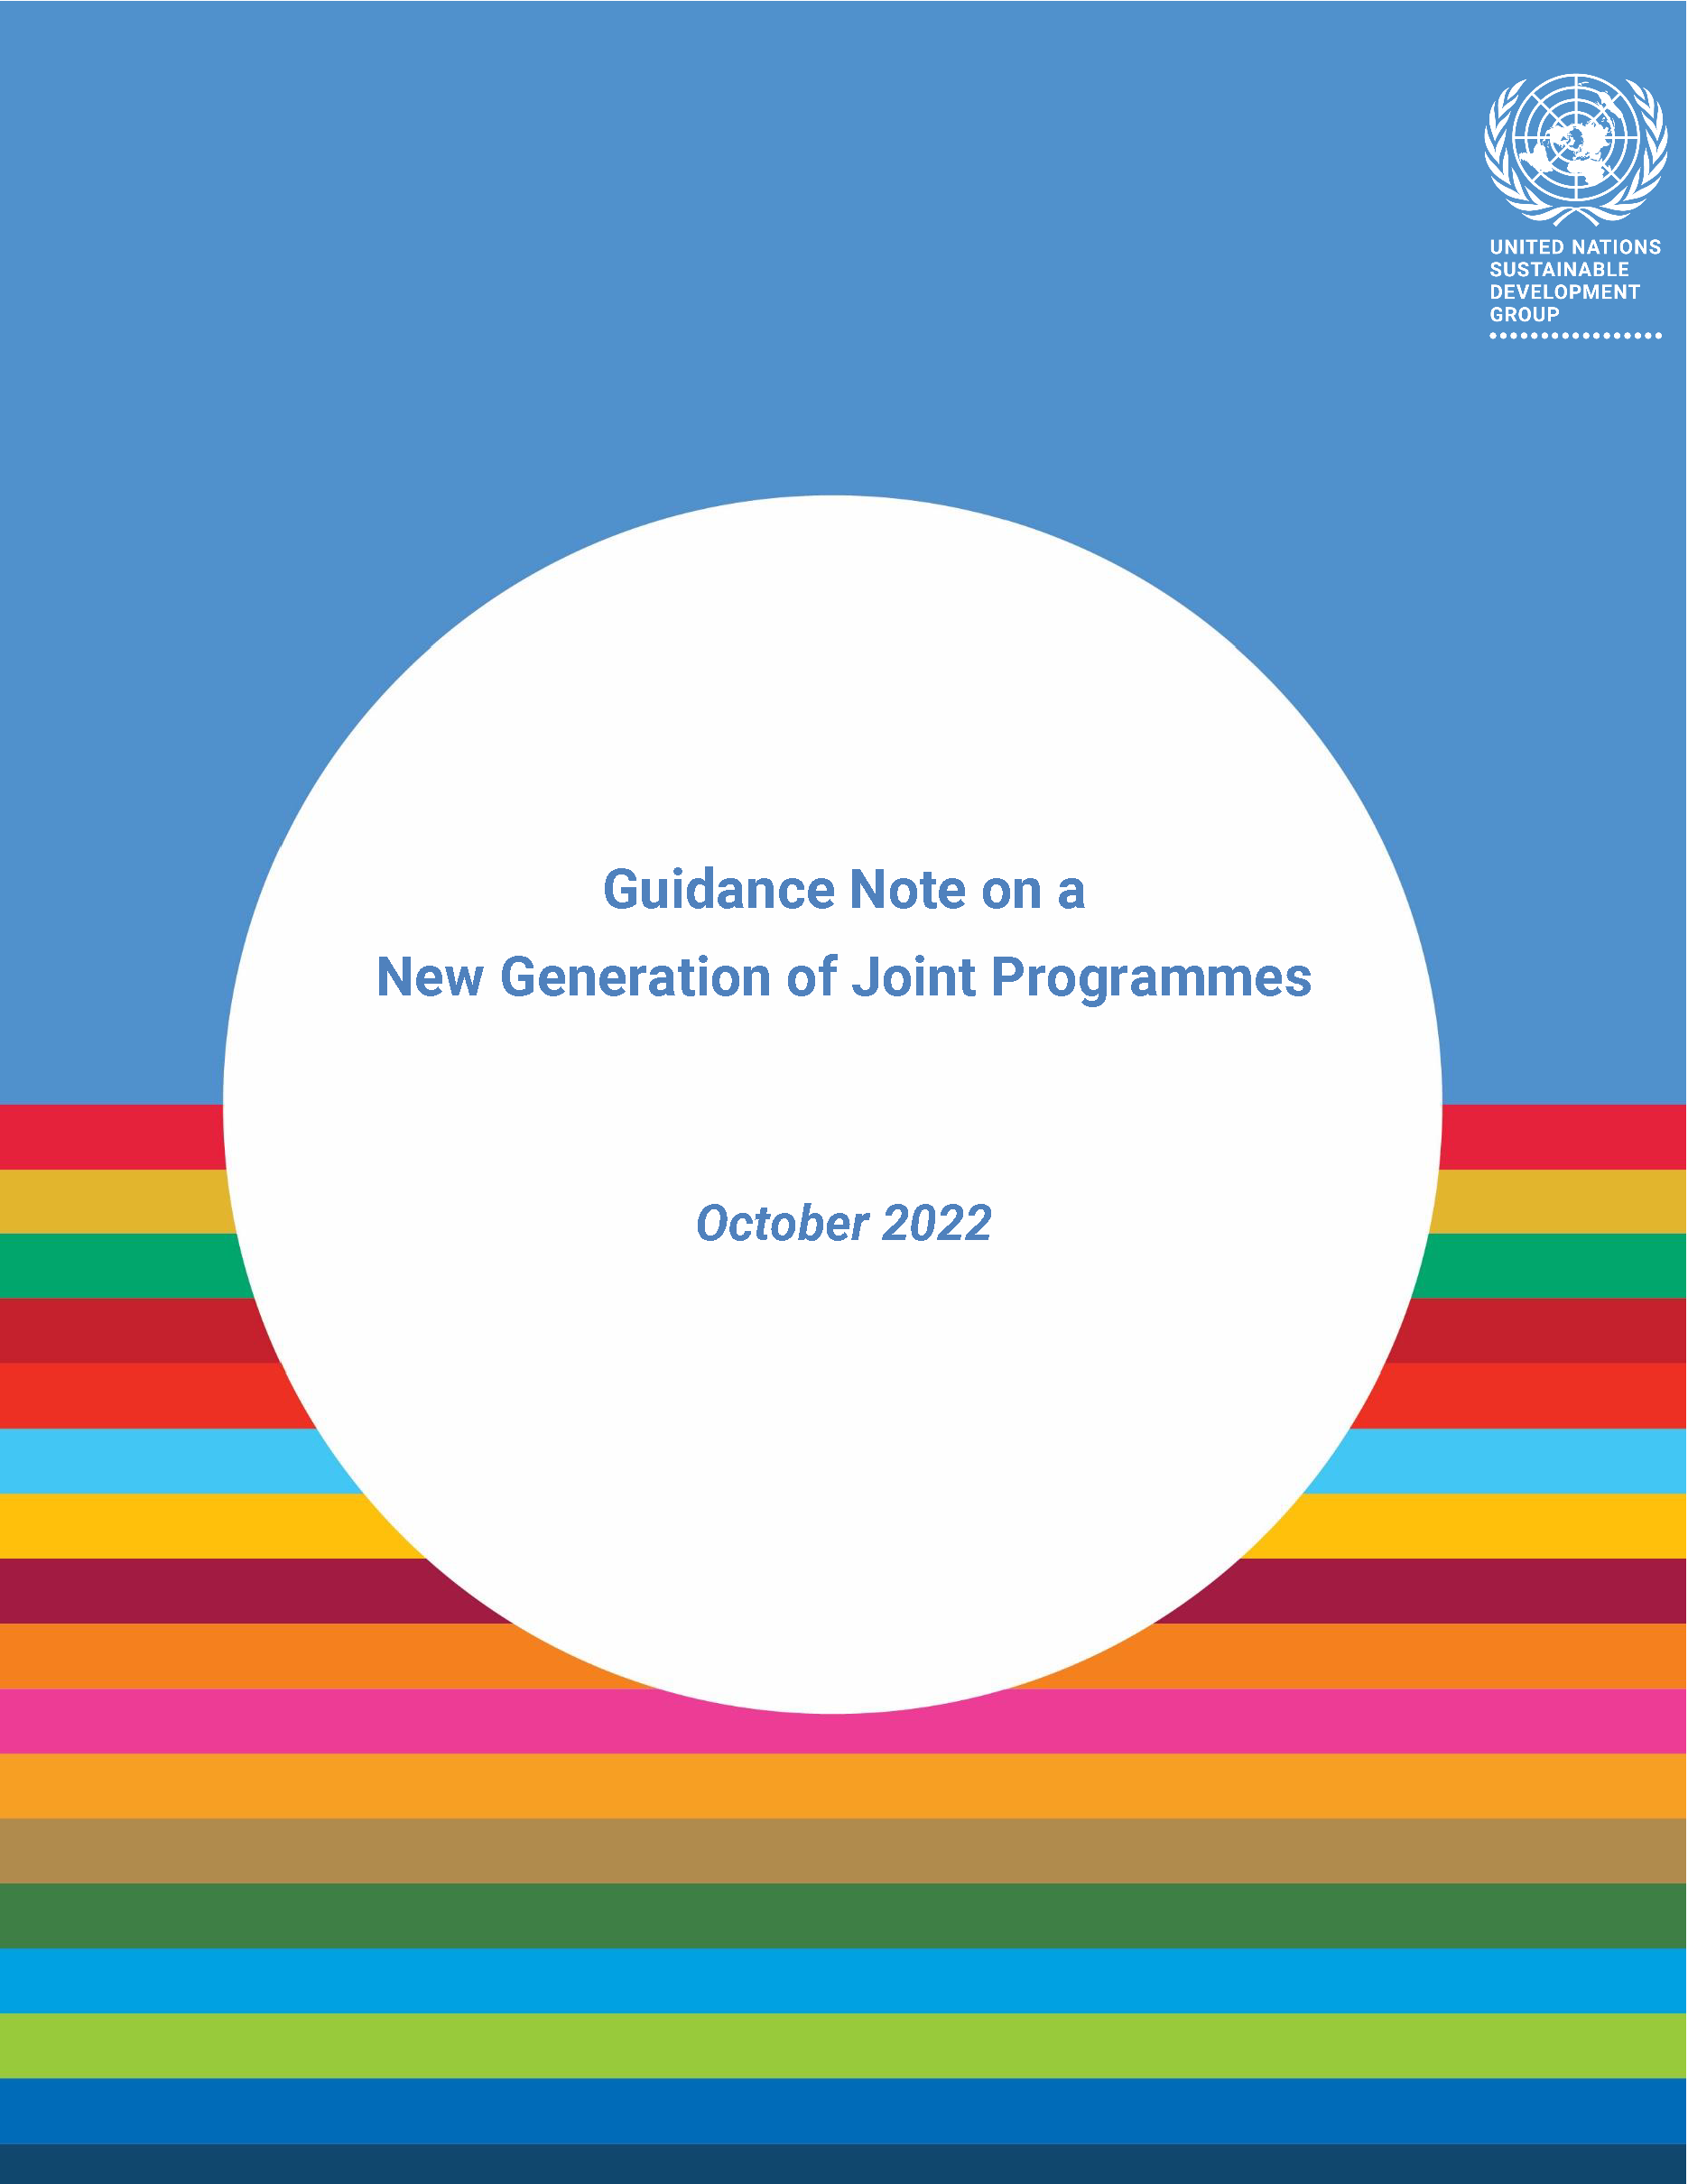 Page de couverture de la note d'orientation sur une nouvelle génération de programmes conjoints